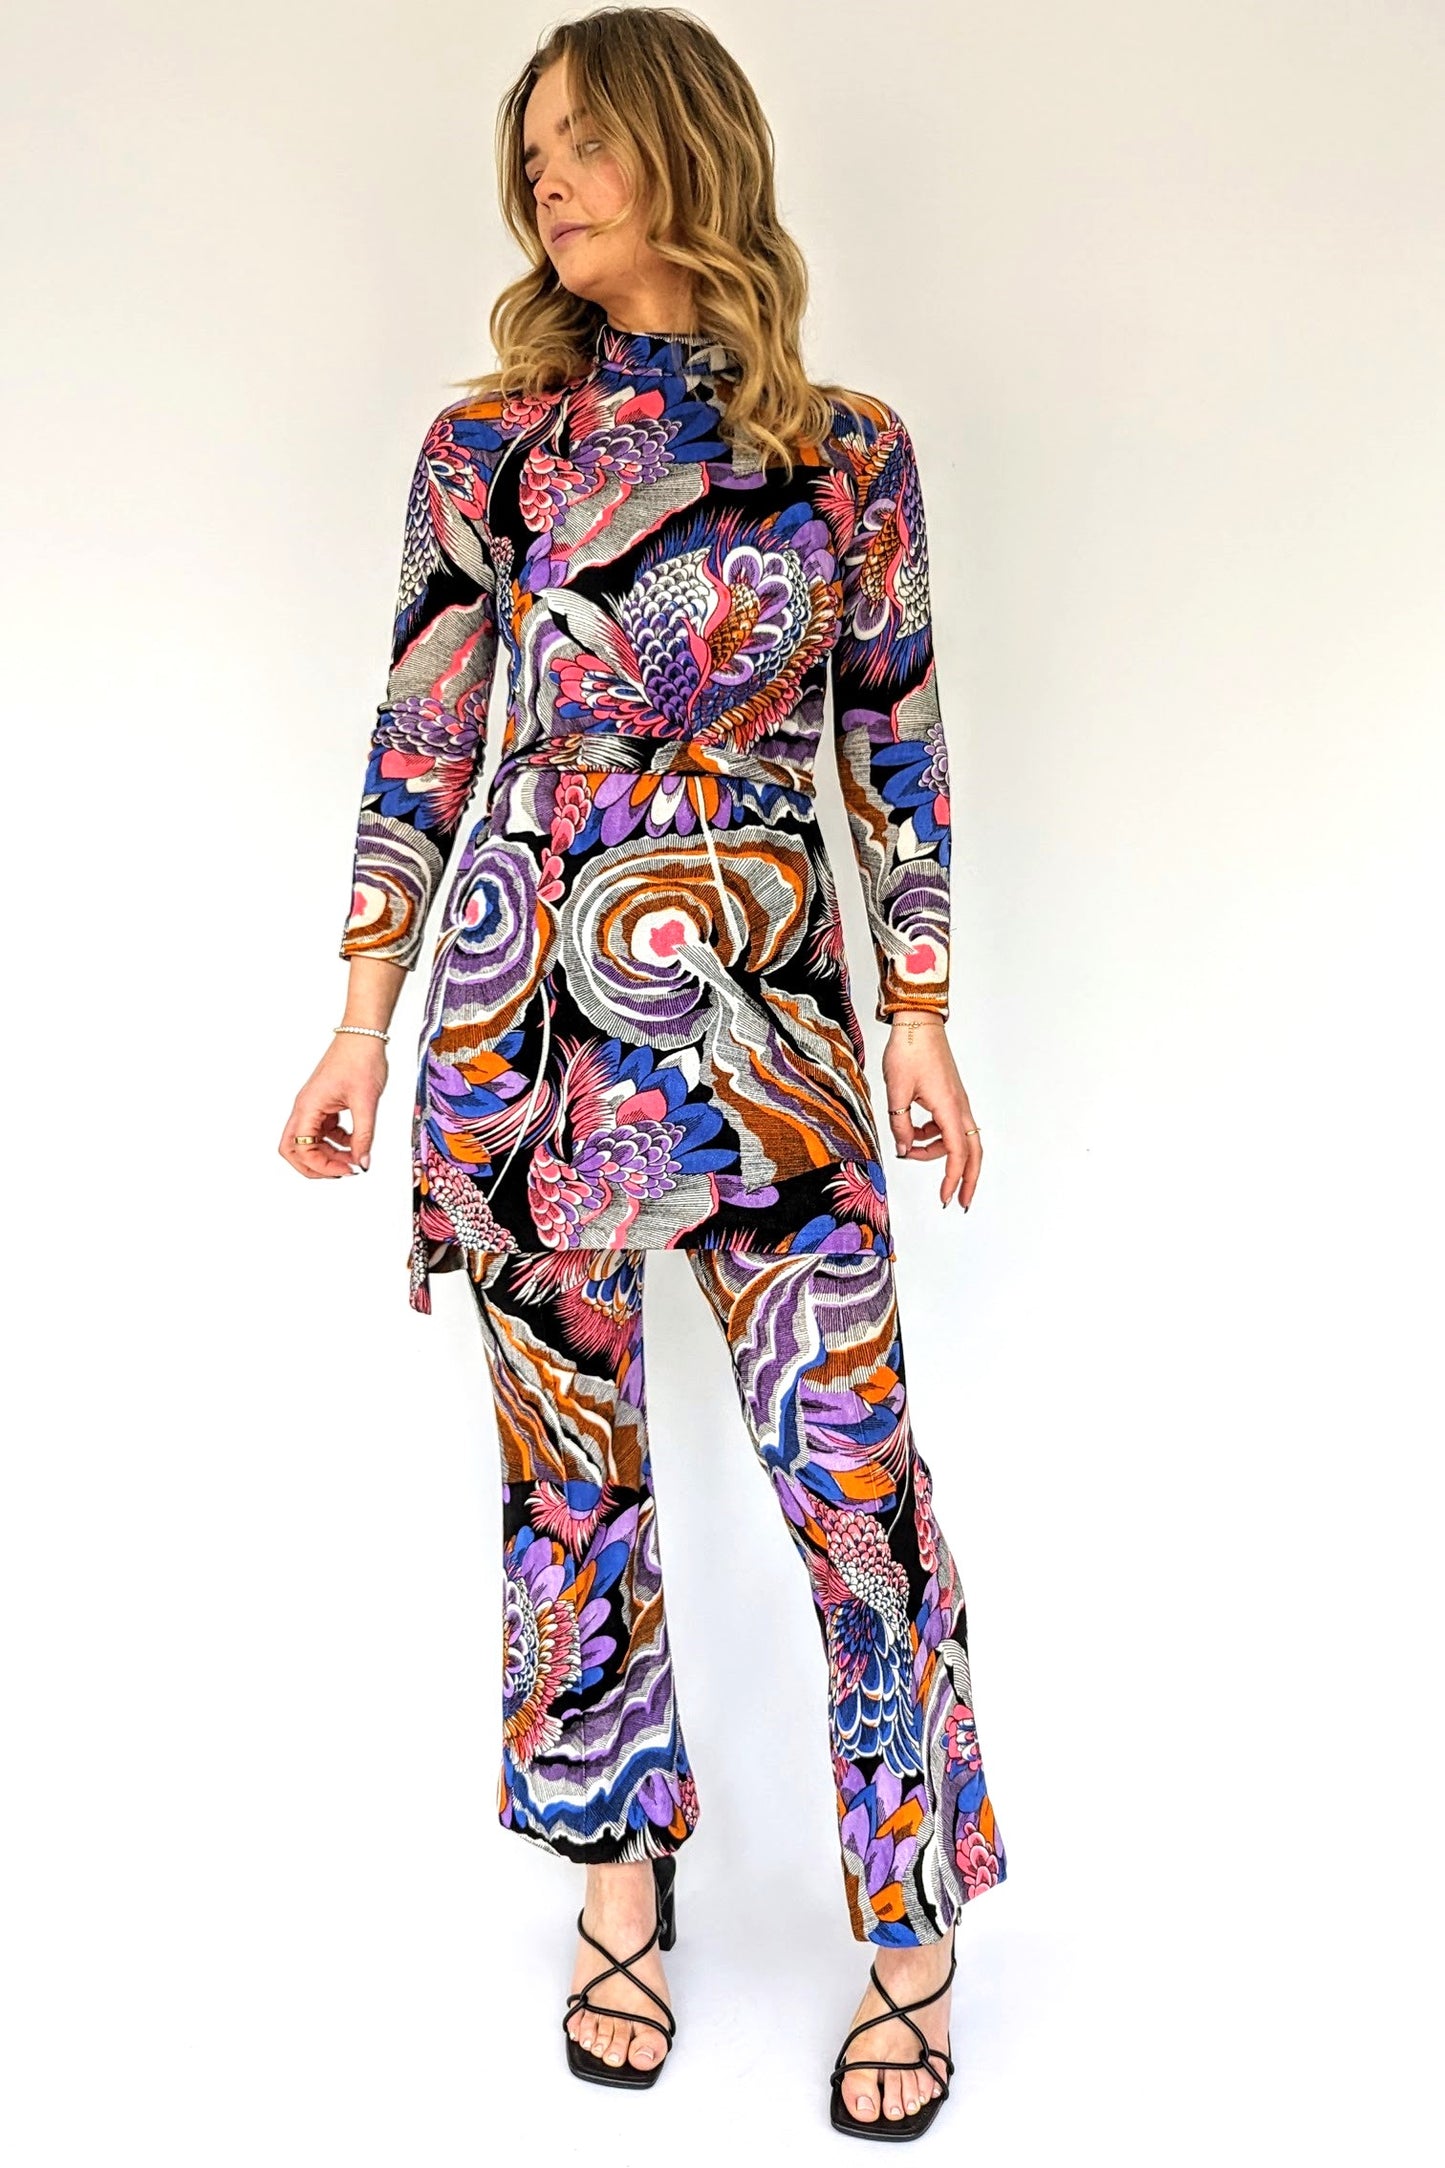 1970s patterned pant suit